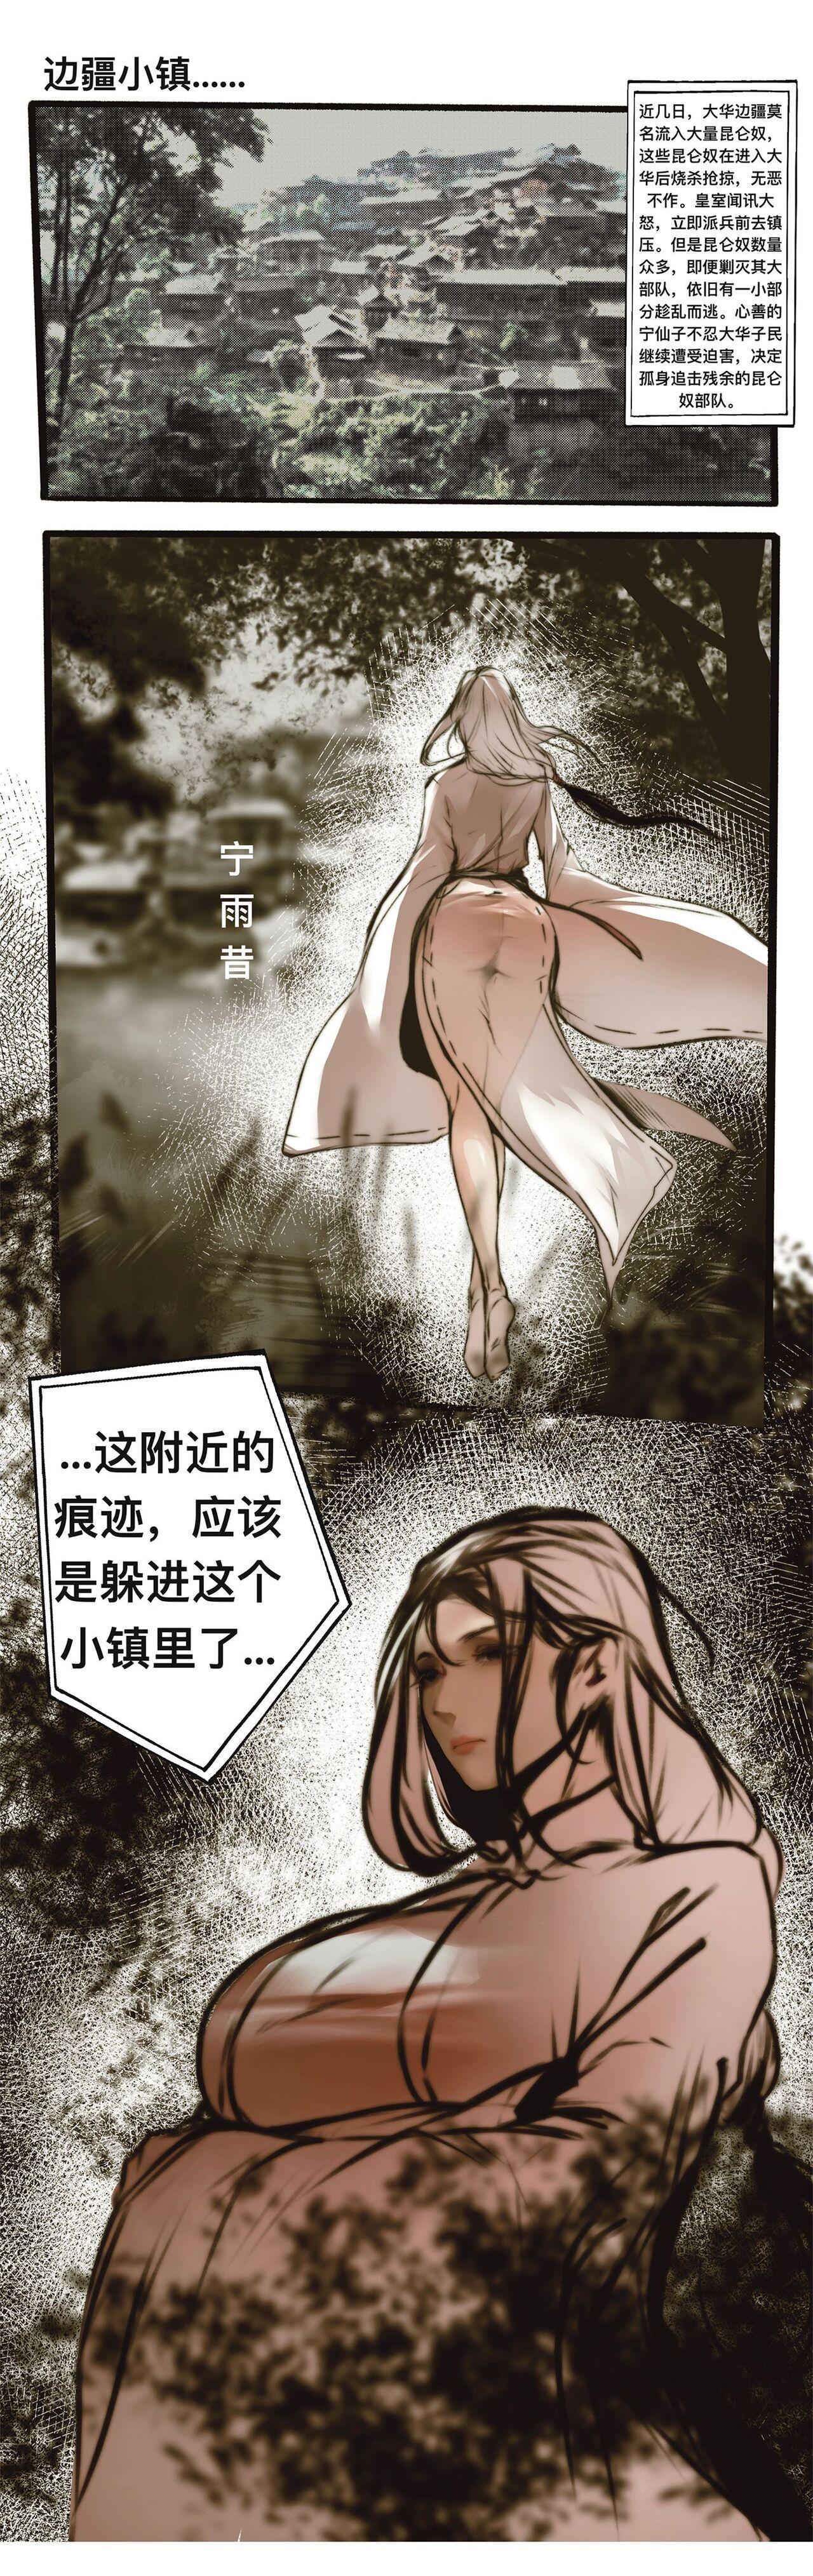 Kink 碧染4上 - Original Nipples - Page 1